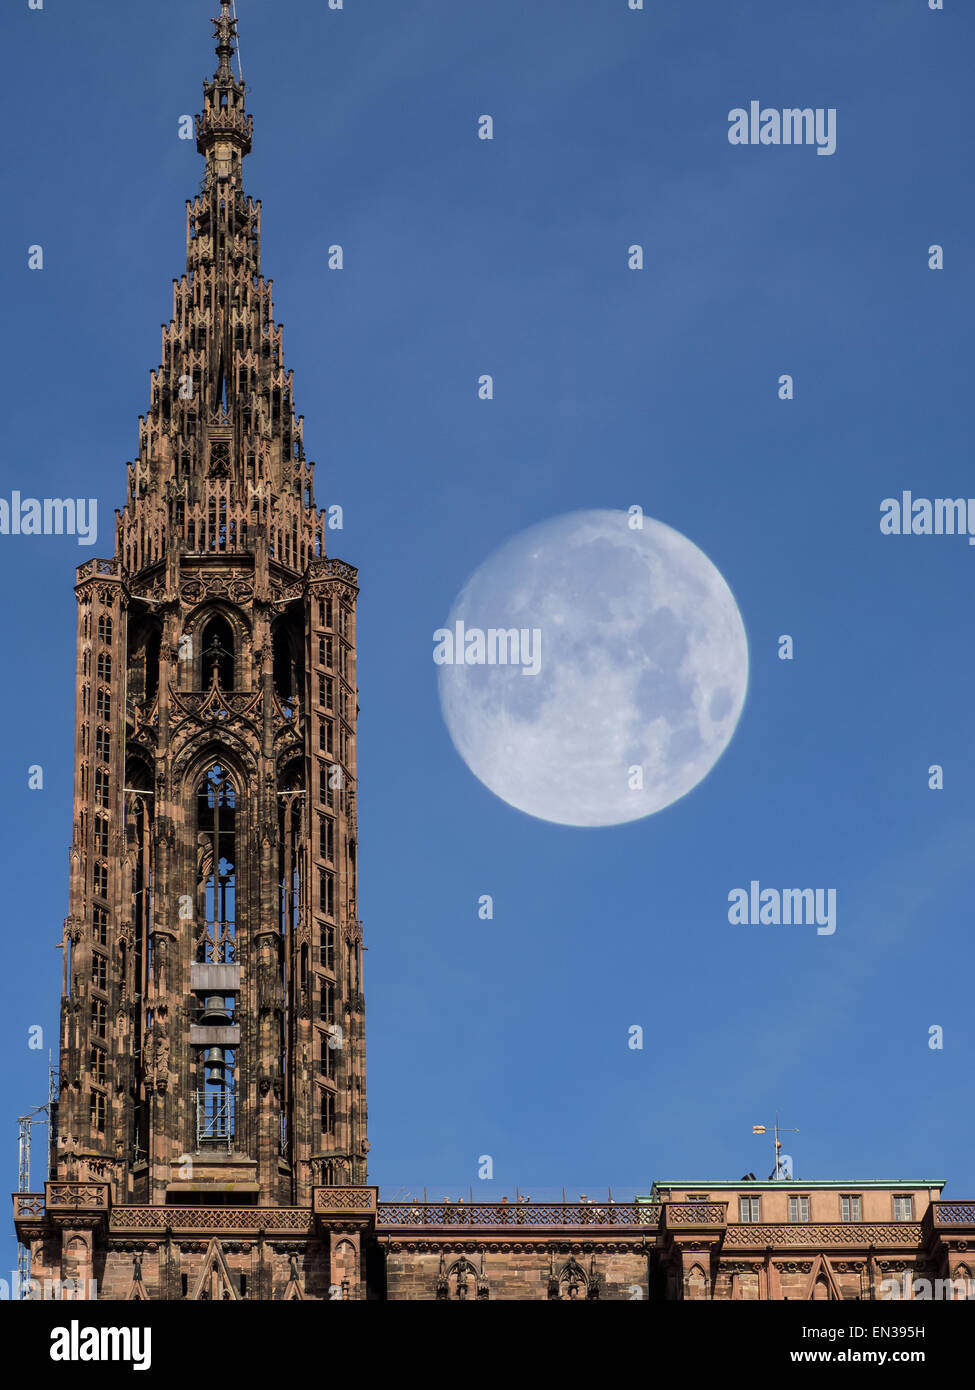 La cathédrale de Strasbourg, tour avec la pleine lune, Strasbourg, France Banque D'Images